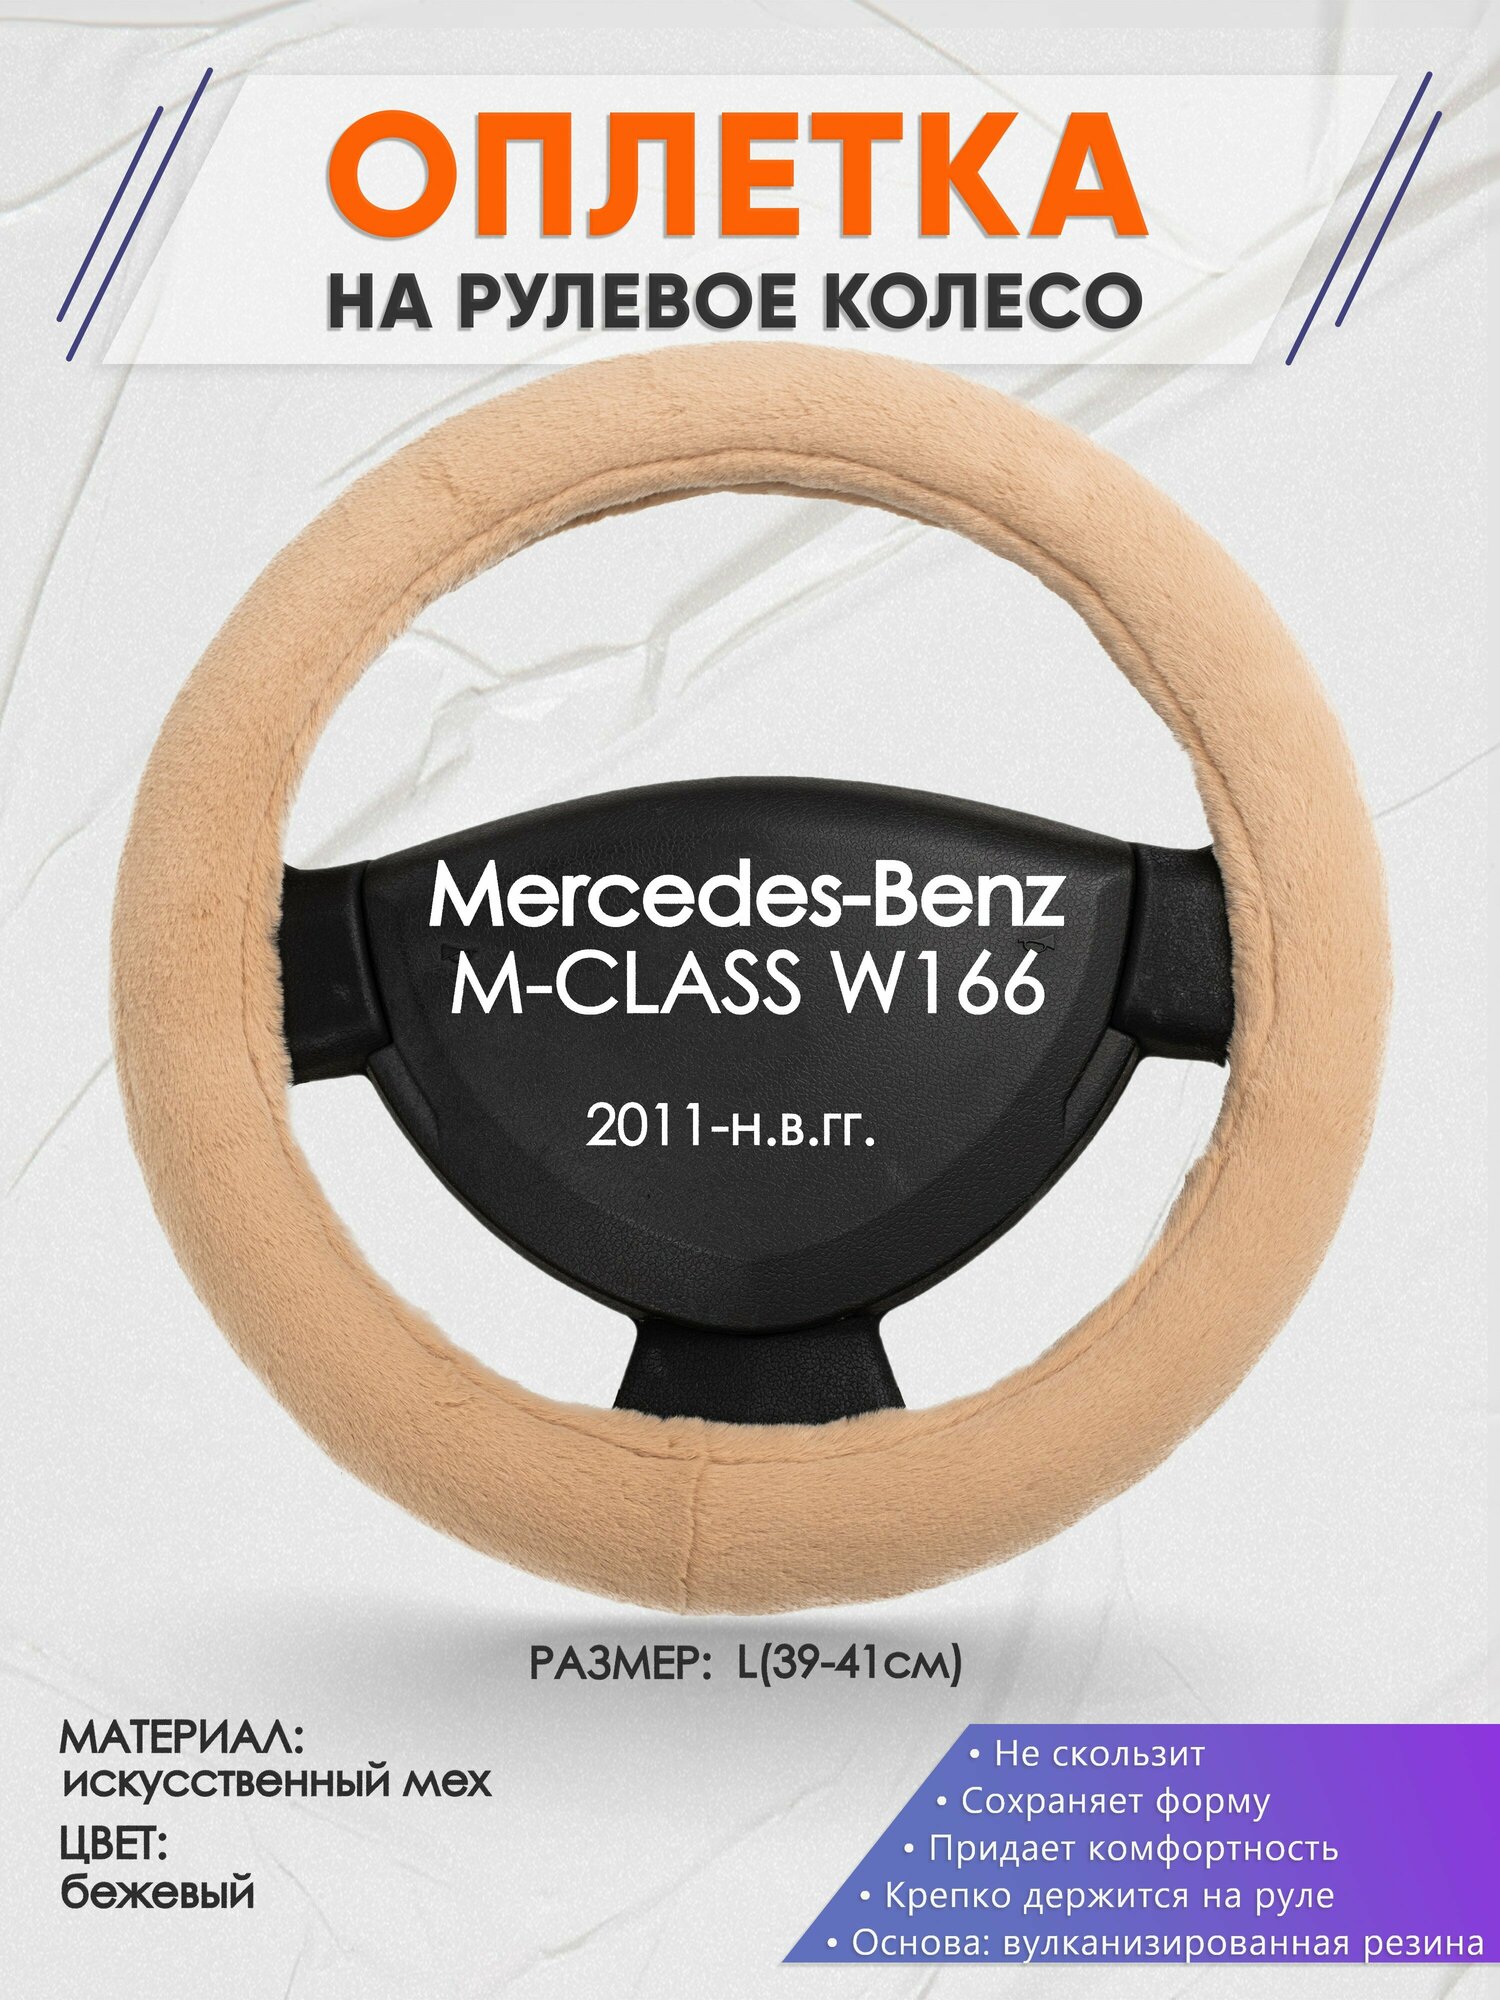 Оплетка на руль для Mercedes-Benz M-CLASS W166(Мерседес Бенц М Класс) 2011-н. в, L(39-41см), Искусственный мех 46